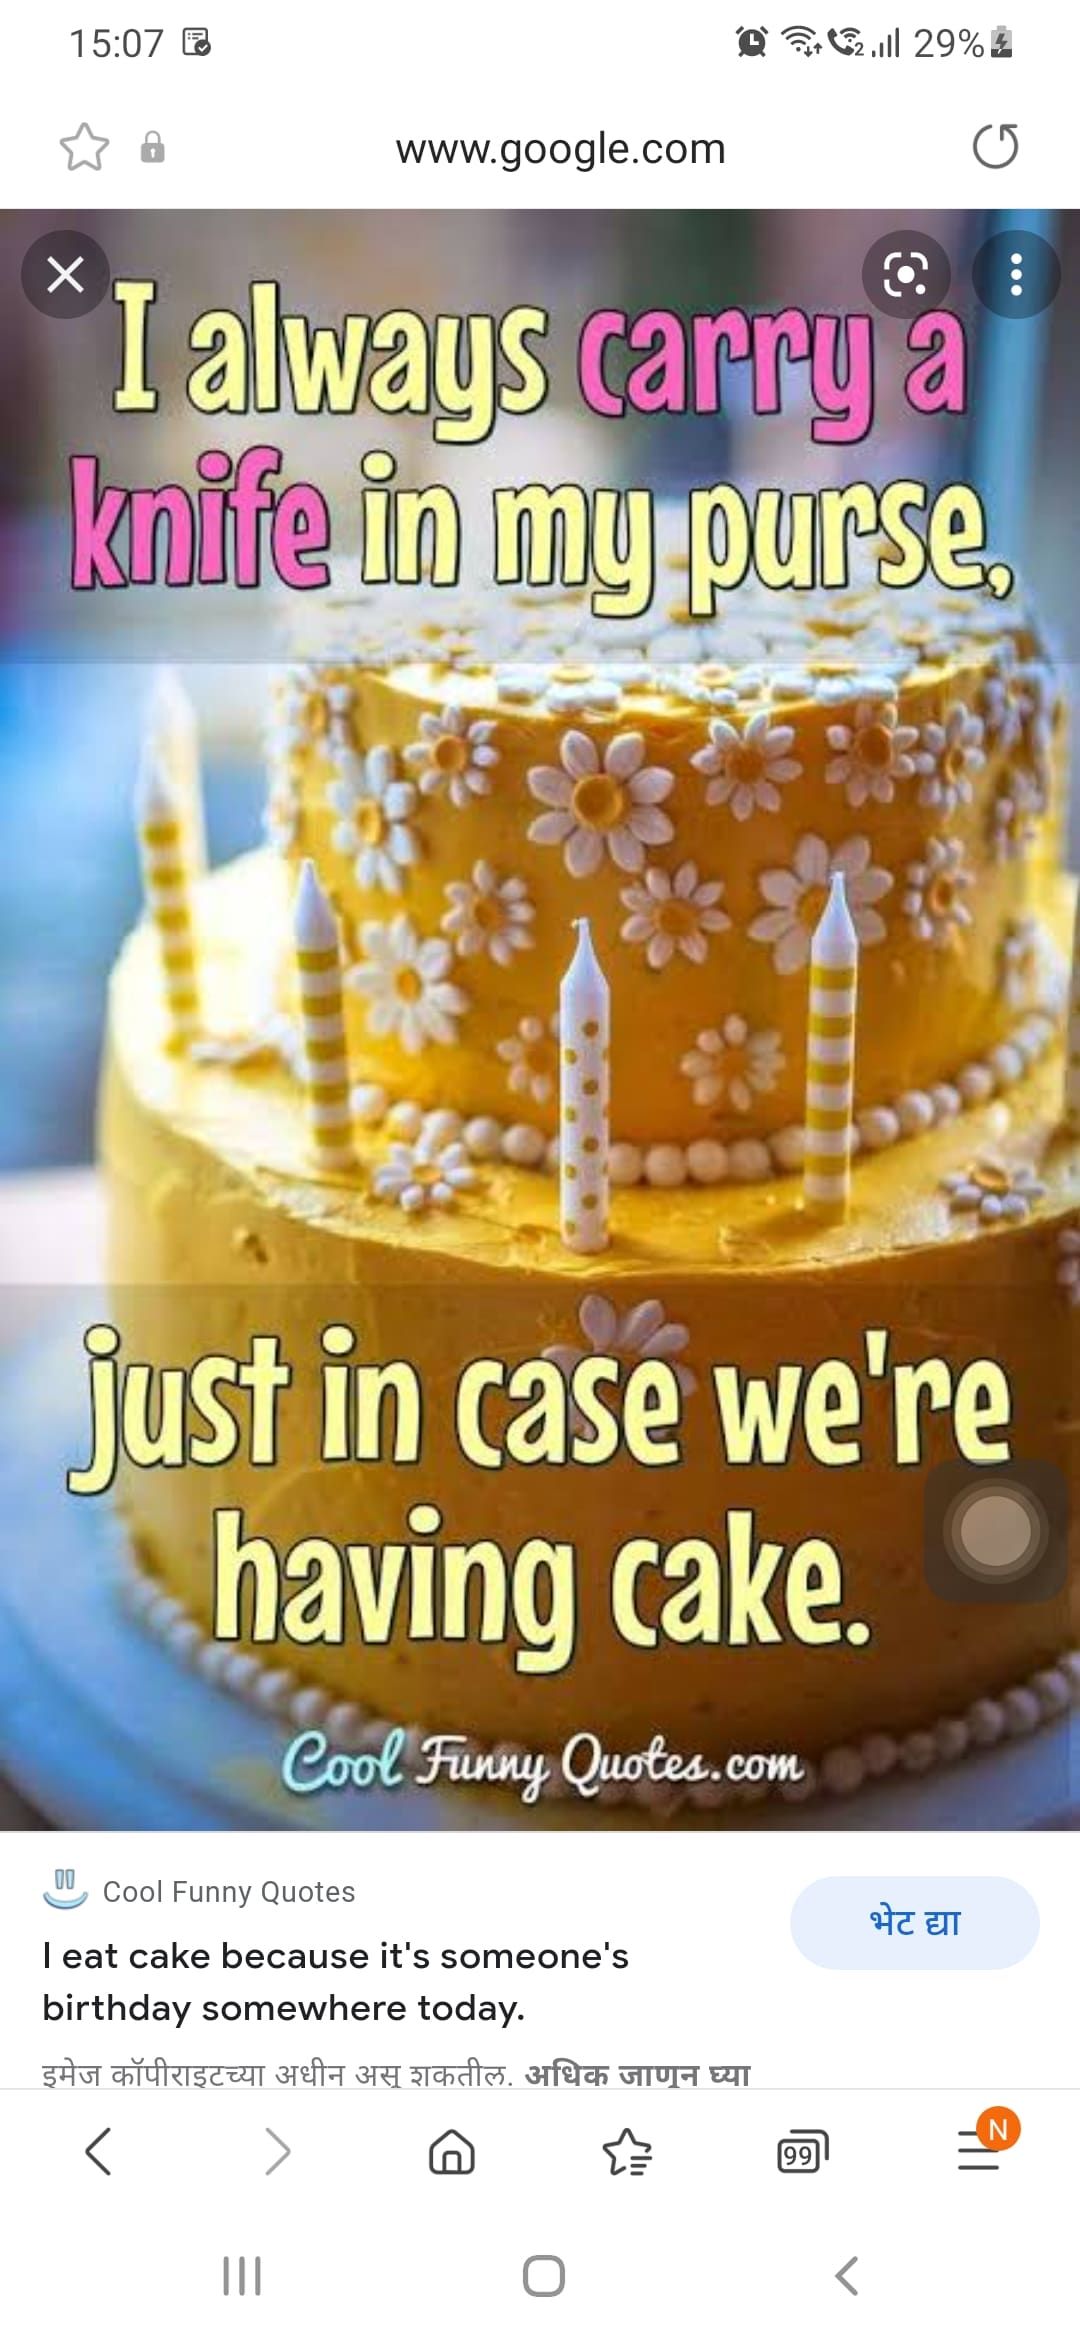 Do u eat cake on tuesday? 1